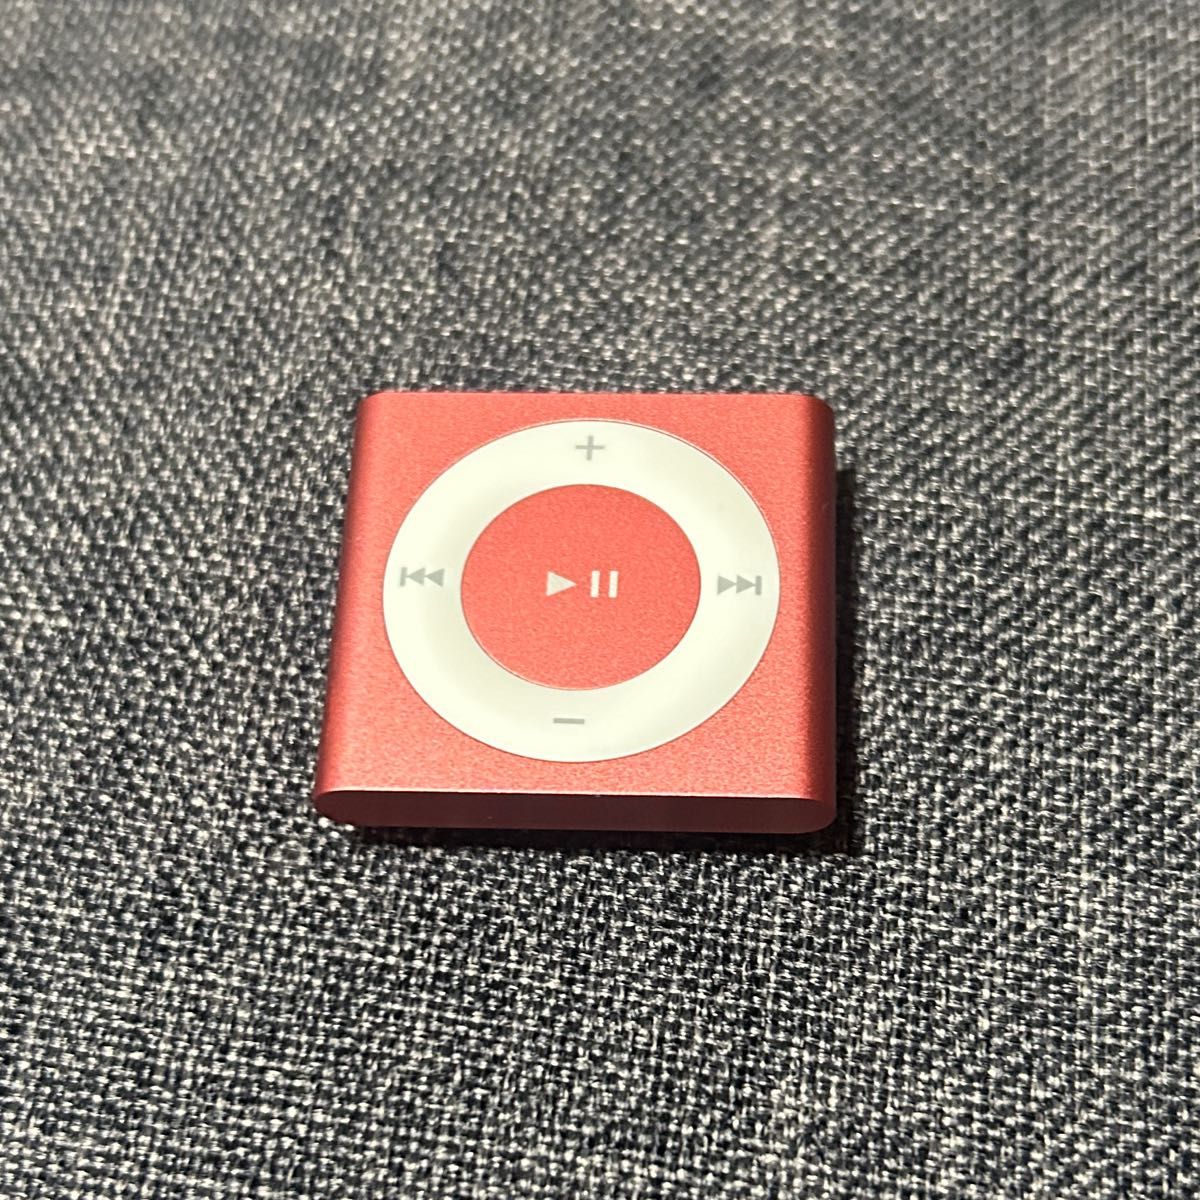 【訳あり】iPod shuffle アイポッド シャッフル 第4世代 ピンク 2GB 